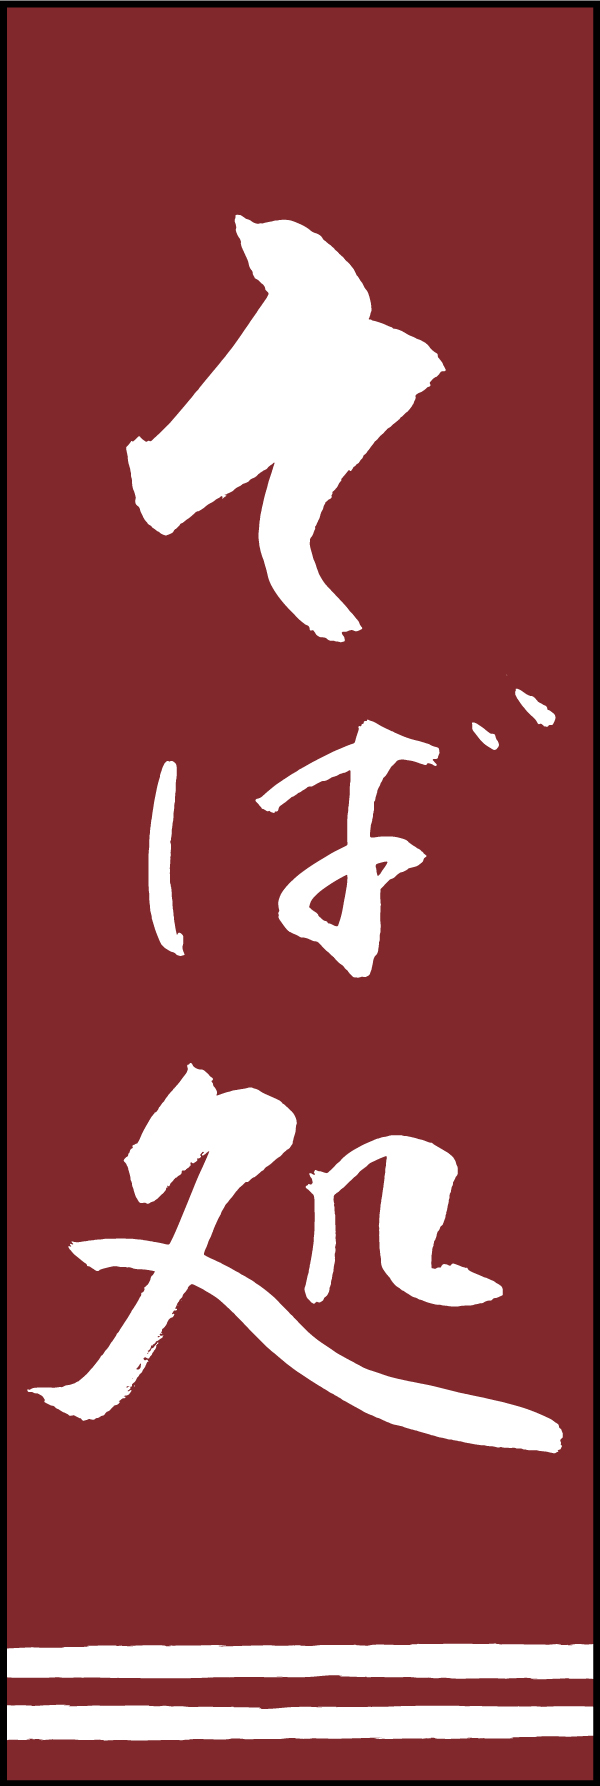 そば処 192_03「そば処」ののぼりです。江戸文字職人 加藤木大介氏による、手書きの筆文字です。完全書き下ろし、唯一無二ののぼりは当店だけのオリジナル商品です。（T.M） 